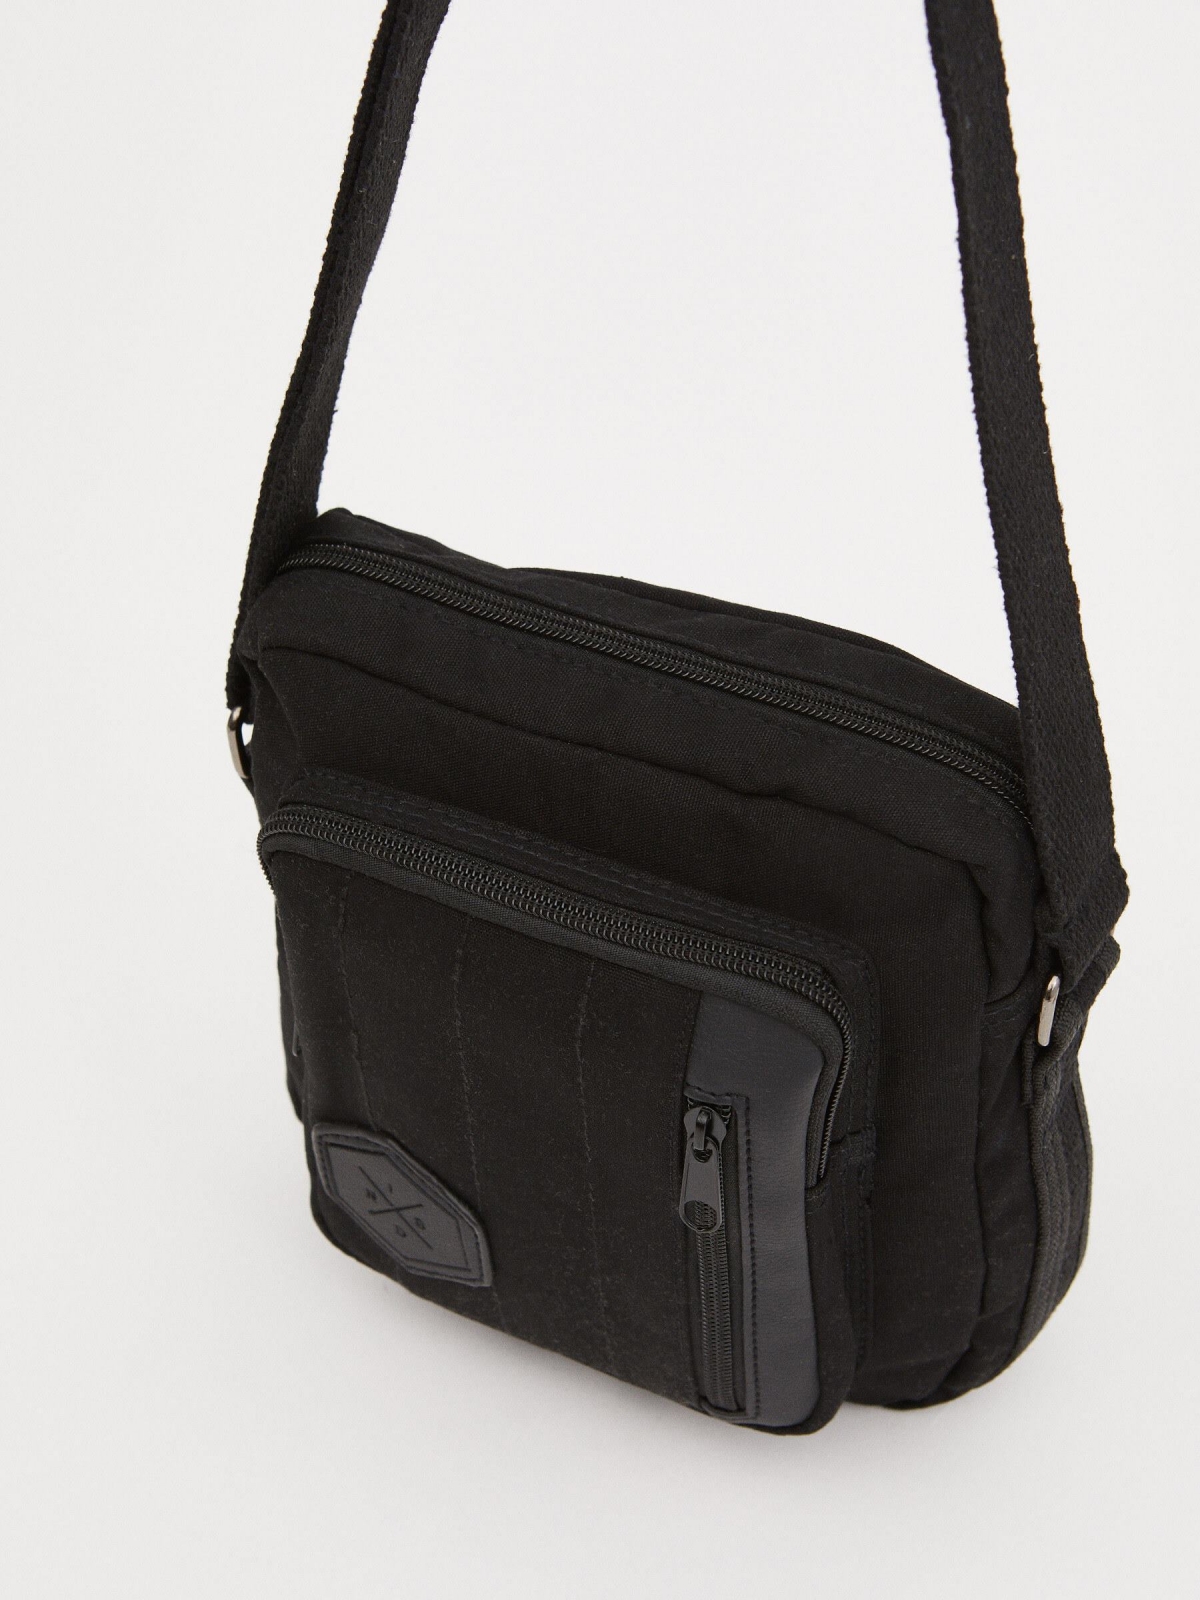 Shoulder bag exterior pocket black with a model